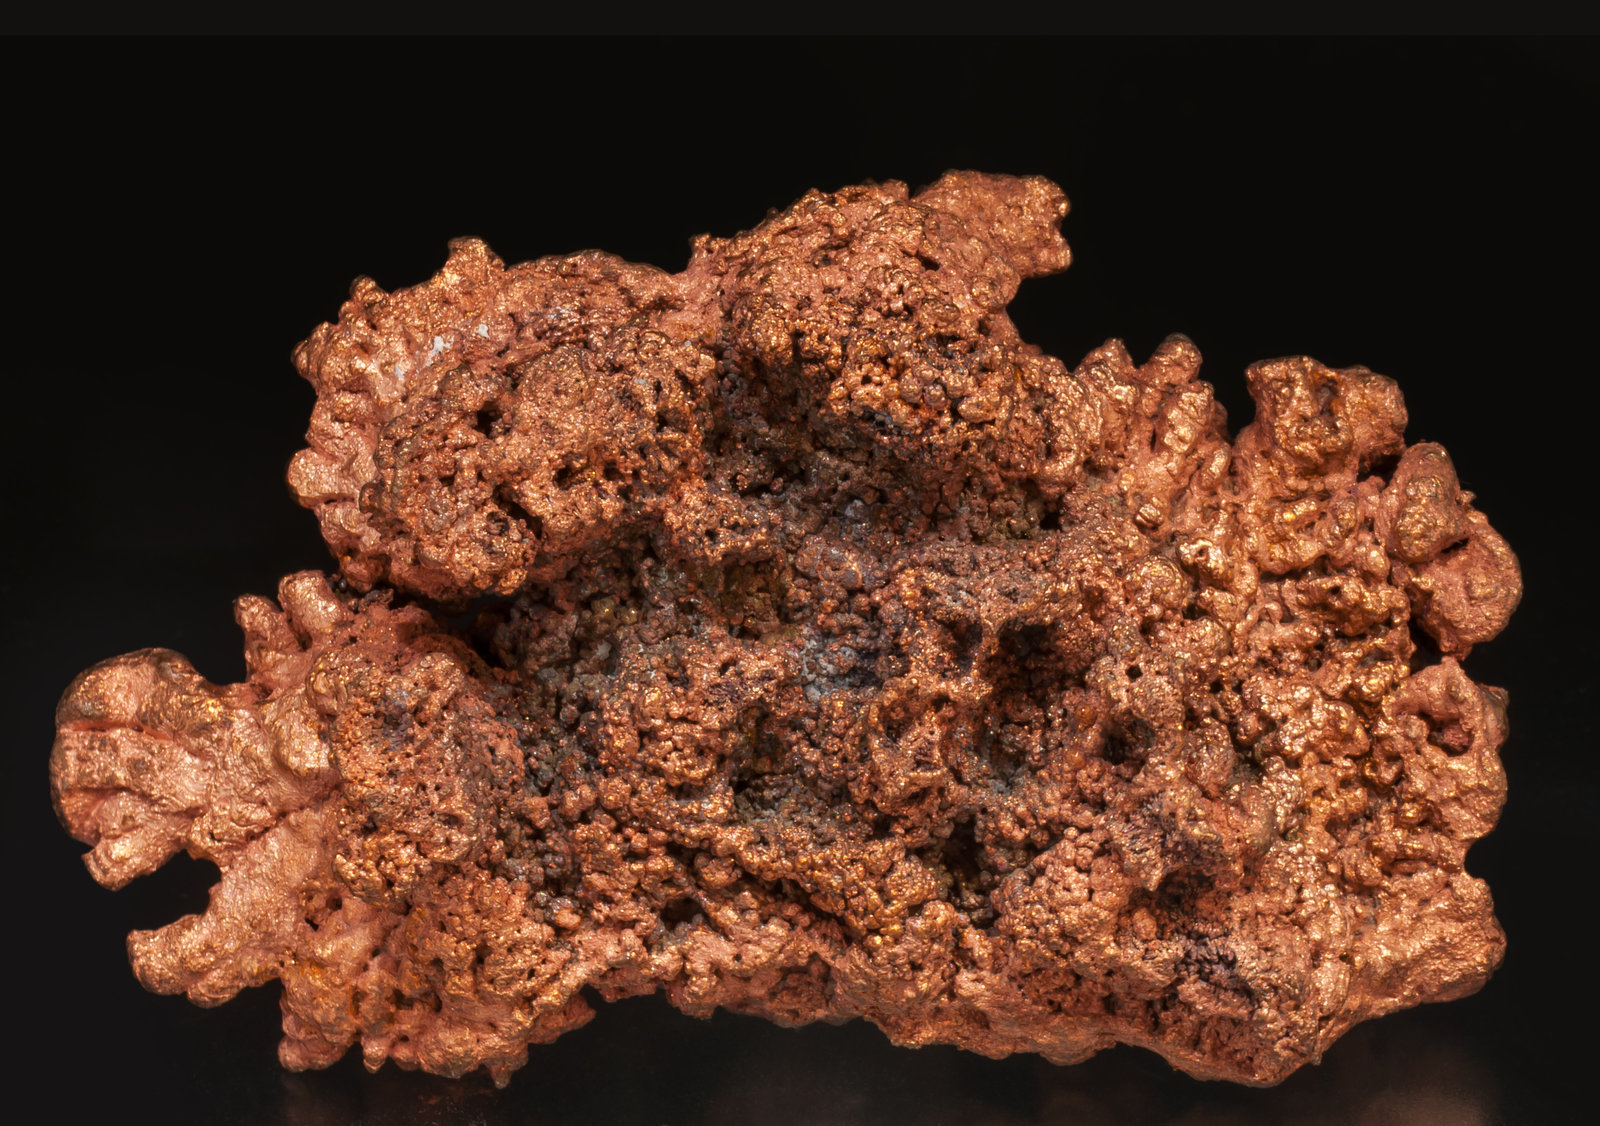 specimens/s_imagesAF7/Copper-ET86AF7r.jpg